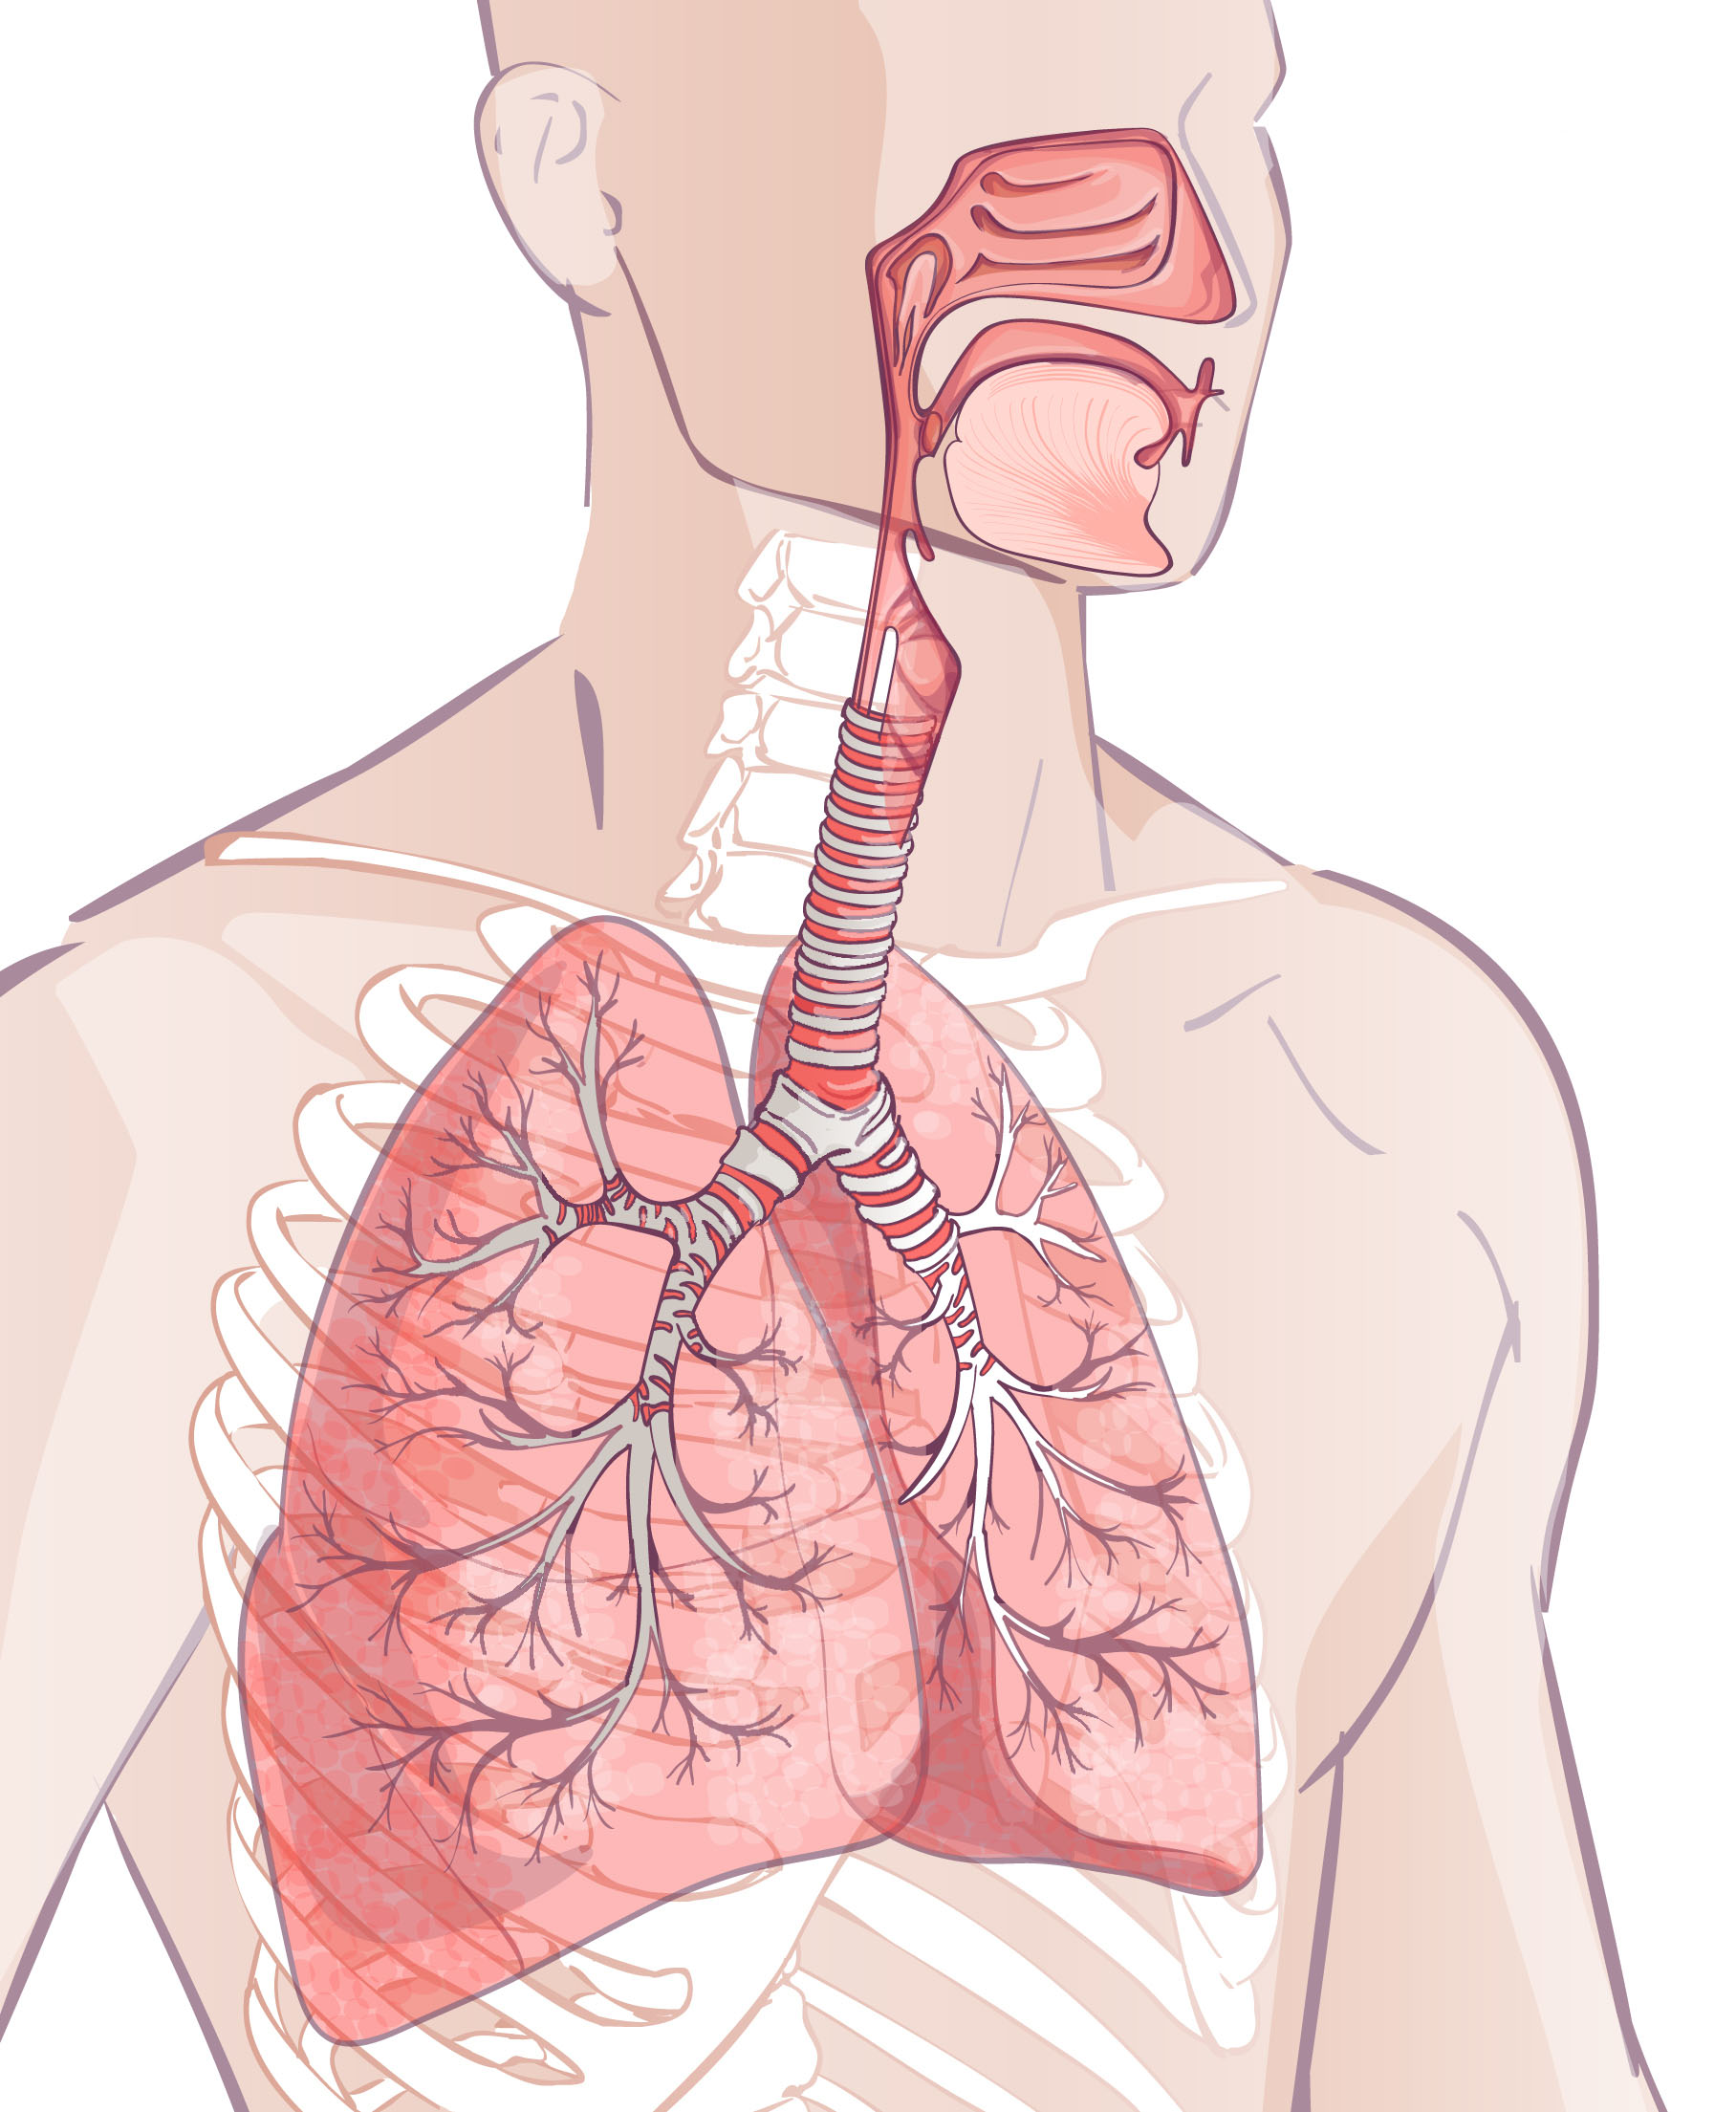 Atemwegserkrankungen vorbeugen mit Ginseng